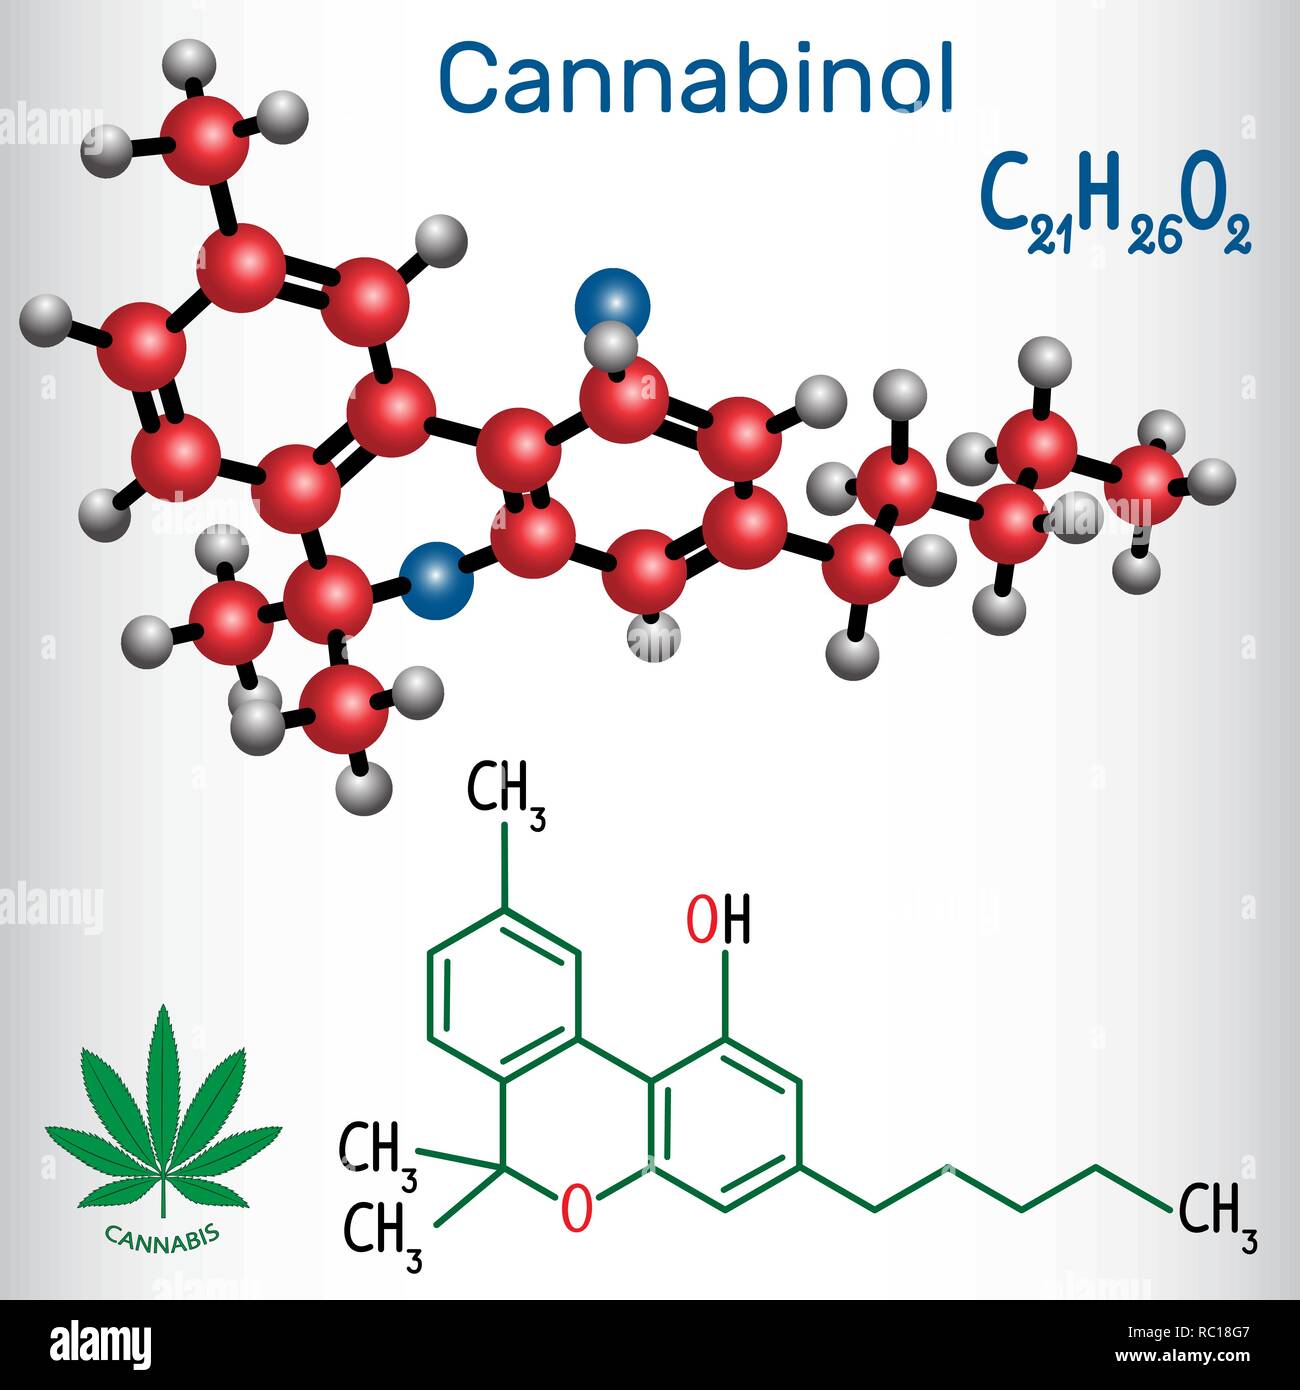 Cannabinol (CBN) - Strukturelle chemische Formel und Molekül-Modell. Schwache psychoaktive Cannabinoid, ist ein Stoffwechselprodukt des tetrahydrocannabinol. Vektor krank Stock Vektor